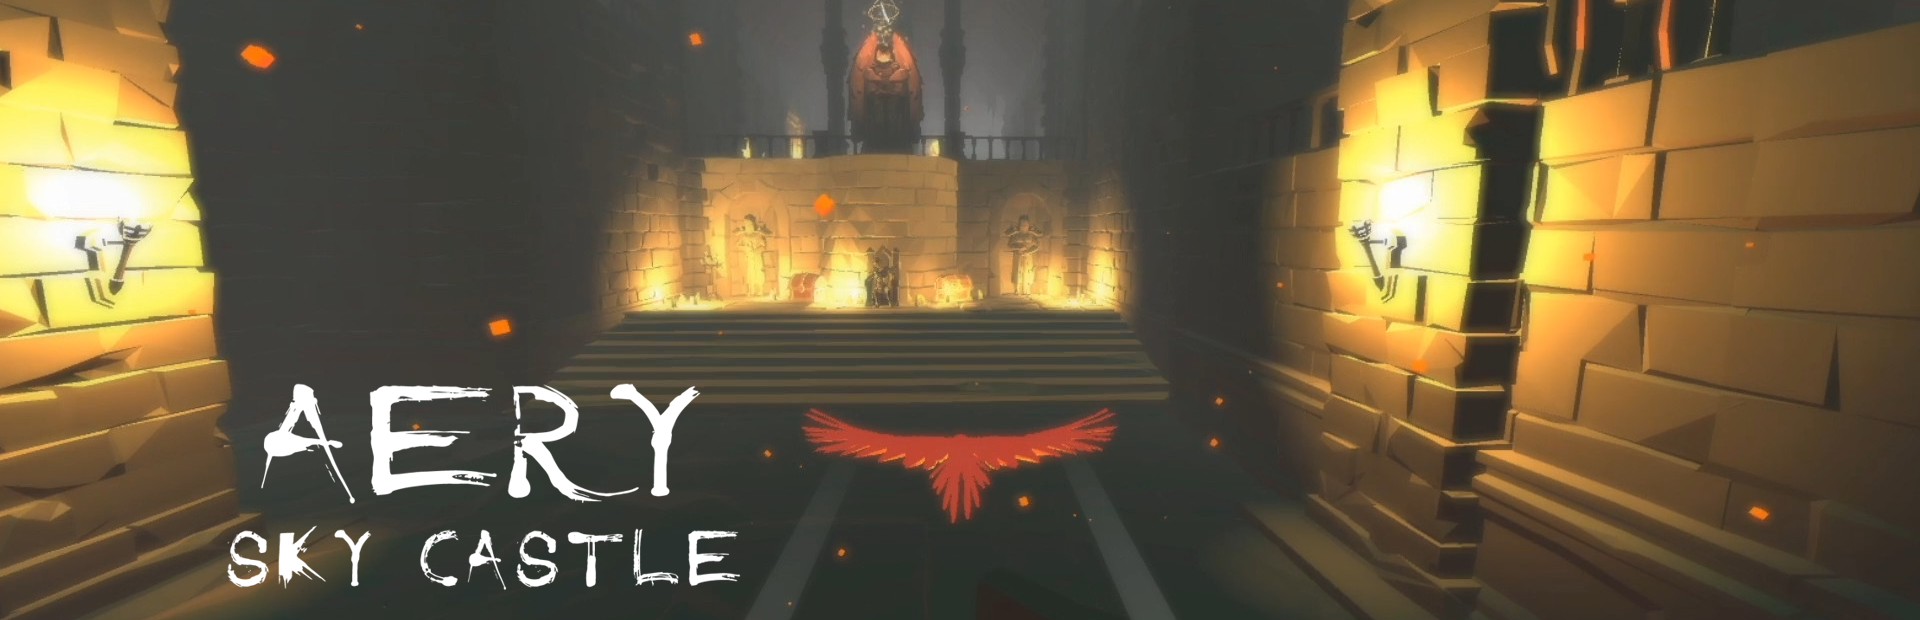 دانلود بازی Aery - Sky Castle برای PC | گیمباتو